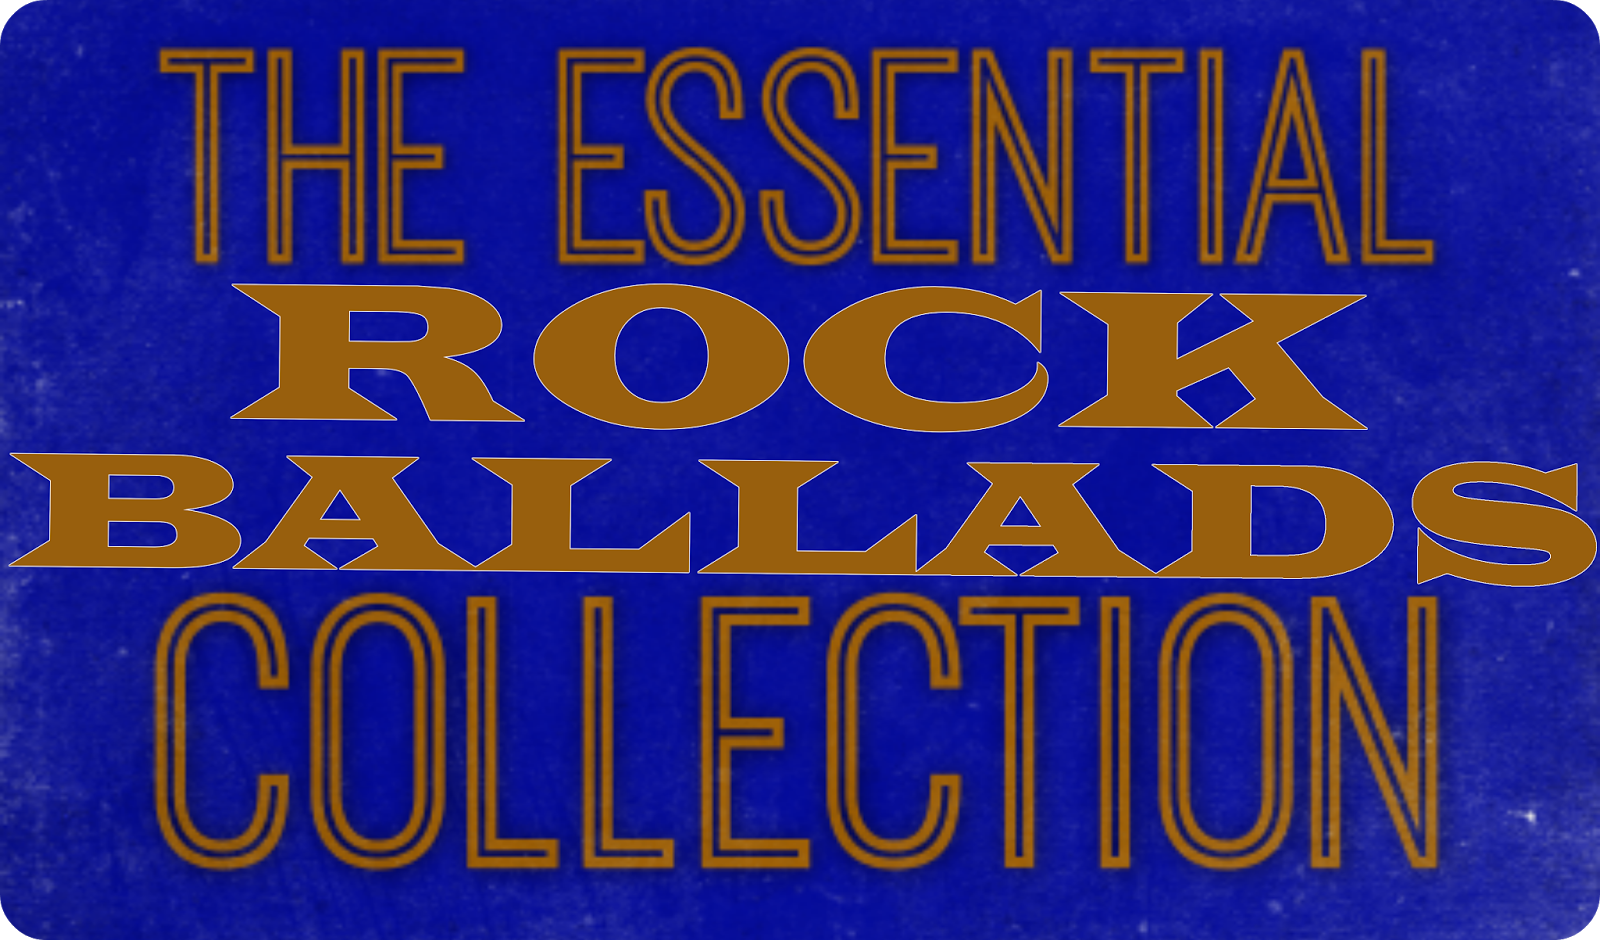 Rock Ballads collection. Best Ballads обложка. The best Rock Ballads. Rock Ballads collection 90-х.